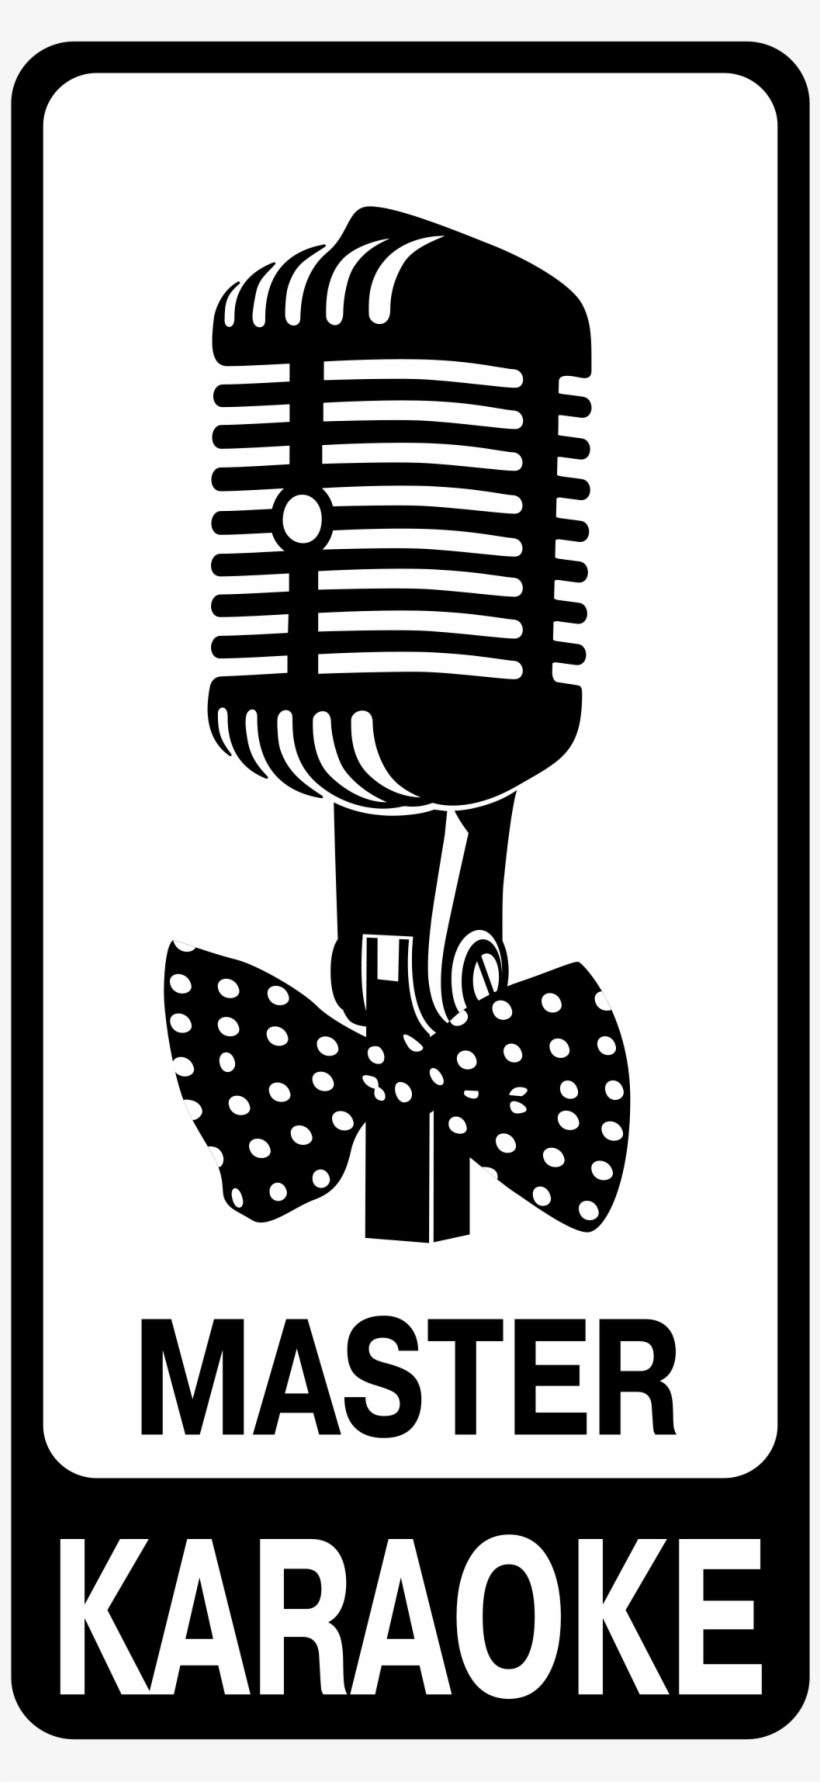 Master Karaoke Logo Png Transparent - Karaoke Master Logo, transparent png #1028968